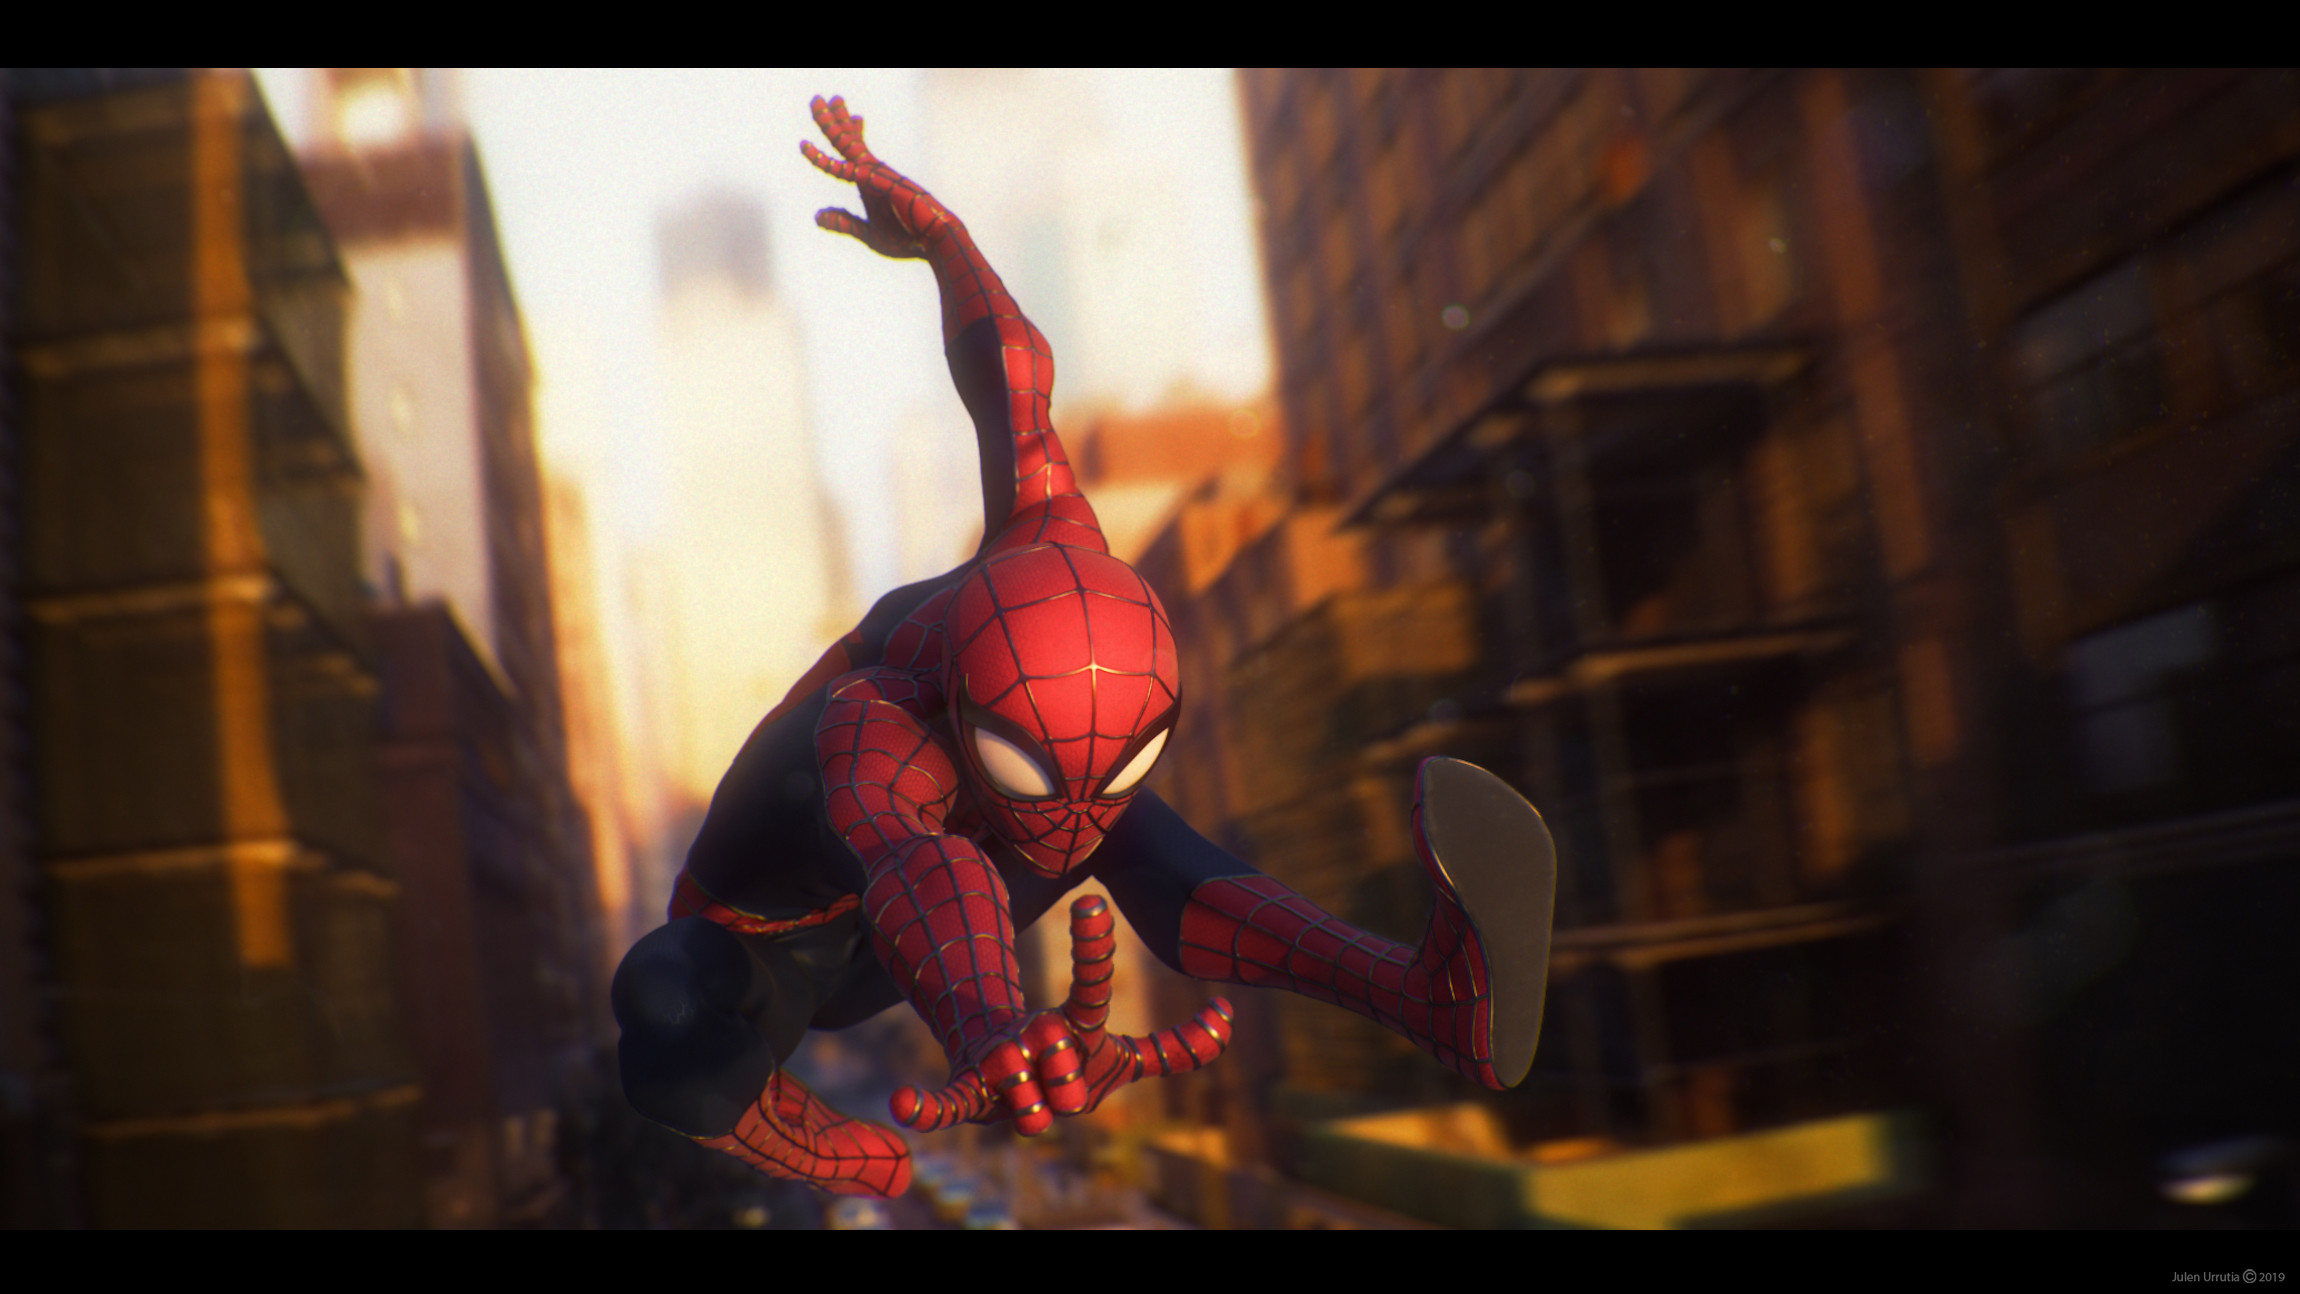 Julen Urrutia Depth Of Field Blurry Background Fan Art Peter Parker Spider Man Digital Art Ultrawide 2300x1294